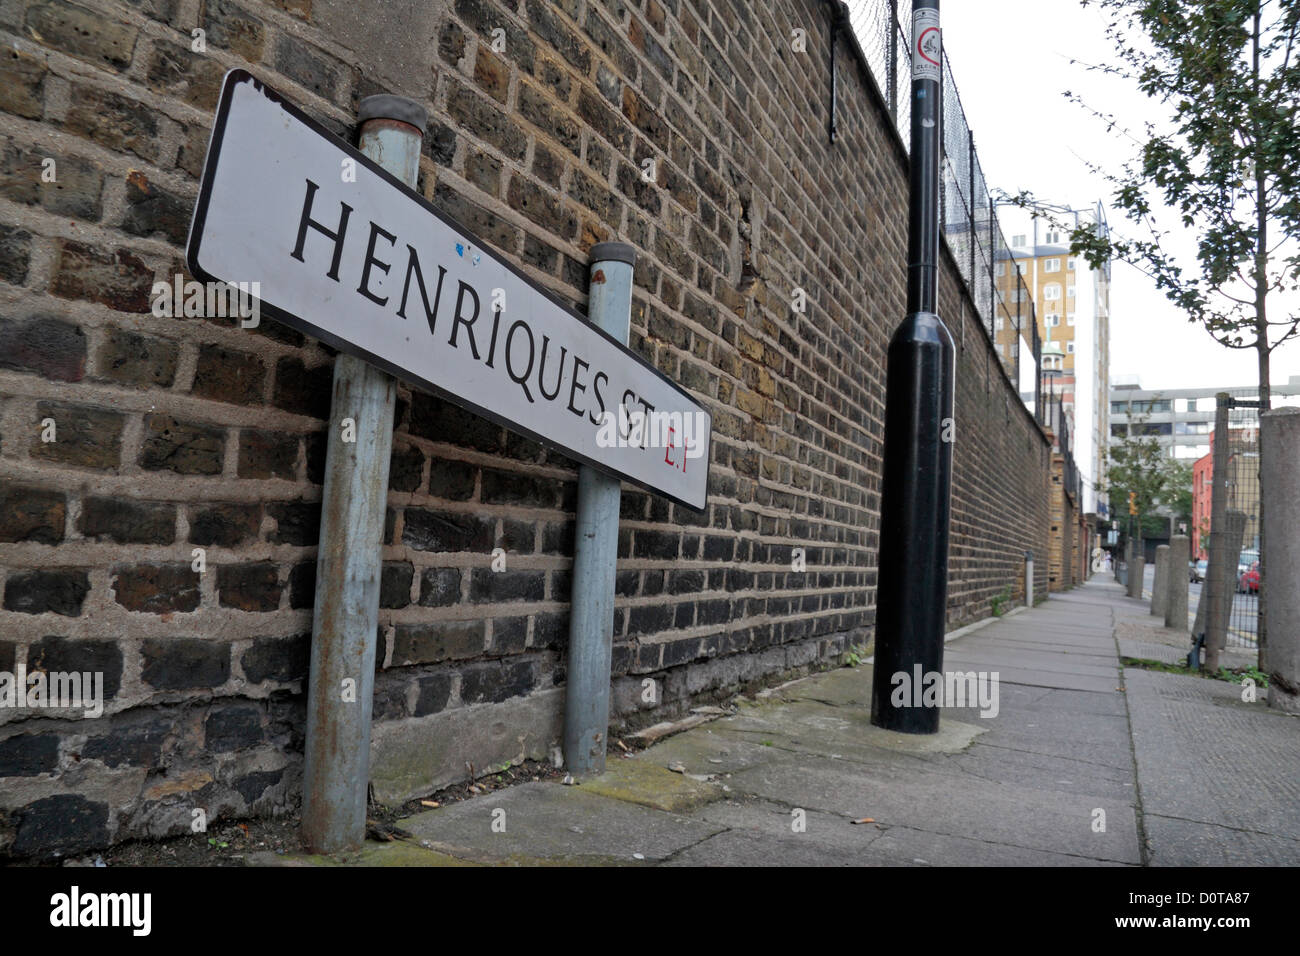 Visualizzare fino Henriques Street, omicidio scena di Elizabeth Stride, Jack lo Squartatore la terza vittima, Whitechapel, East London, E1, UK. Foto Stock